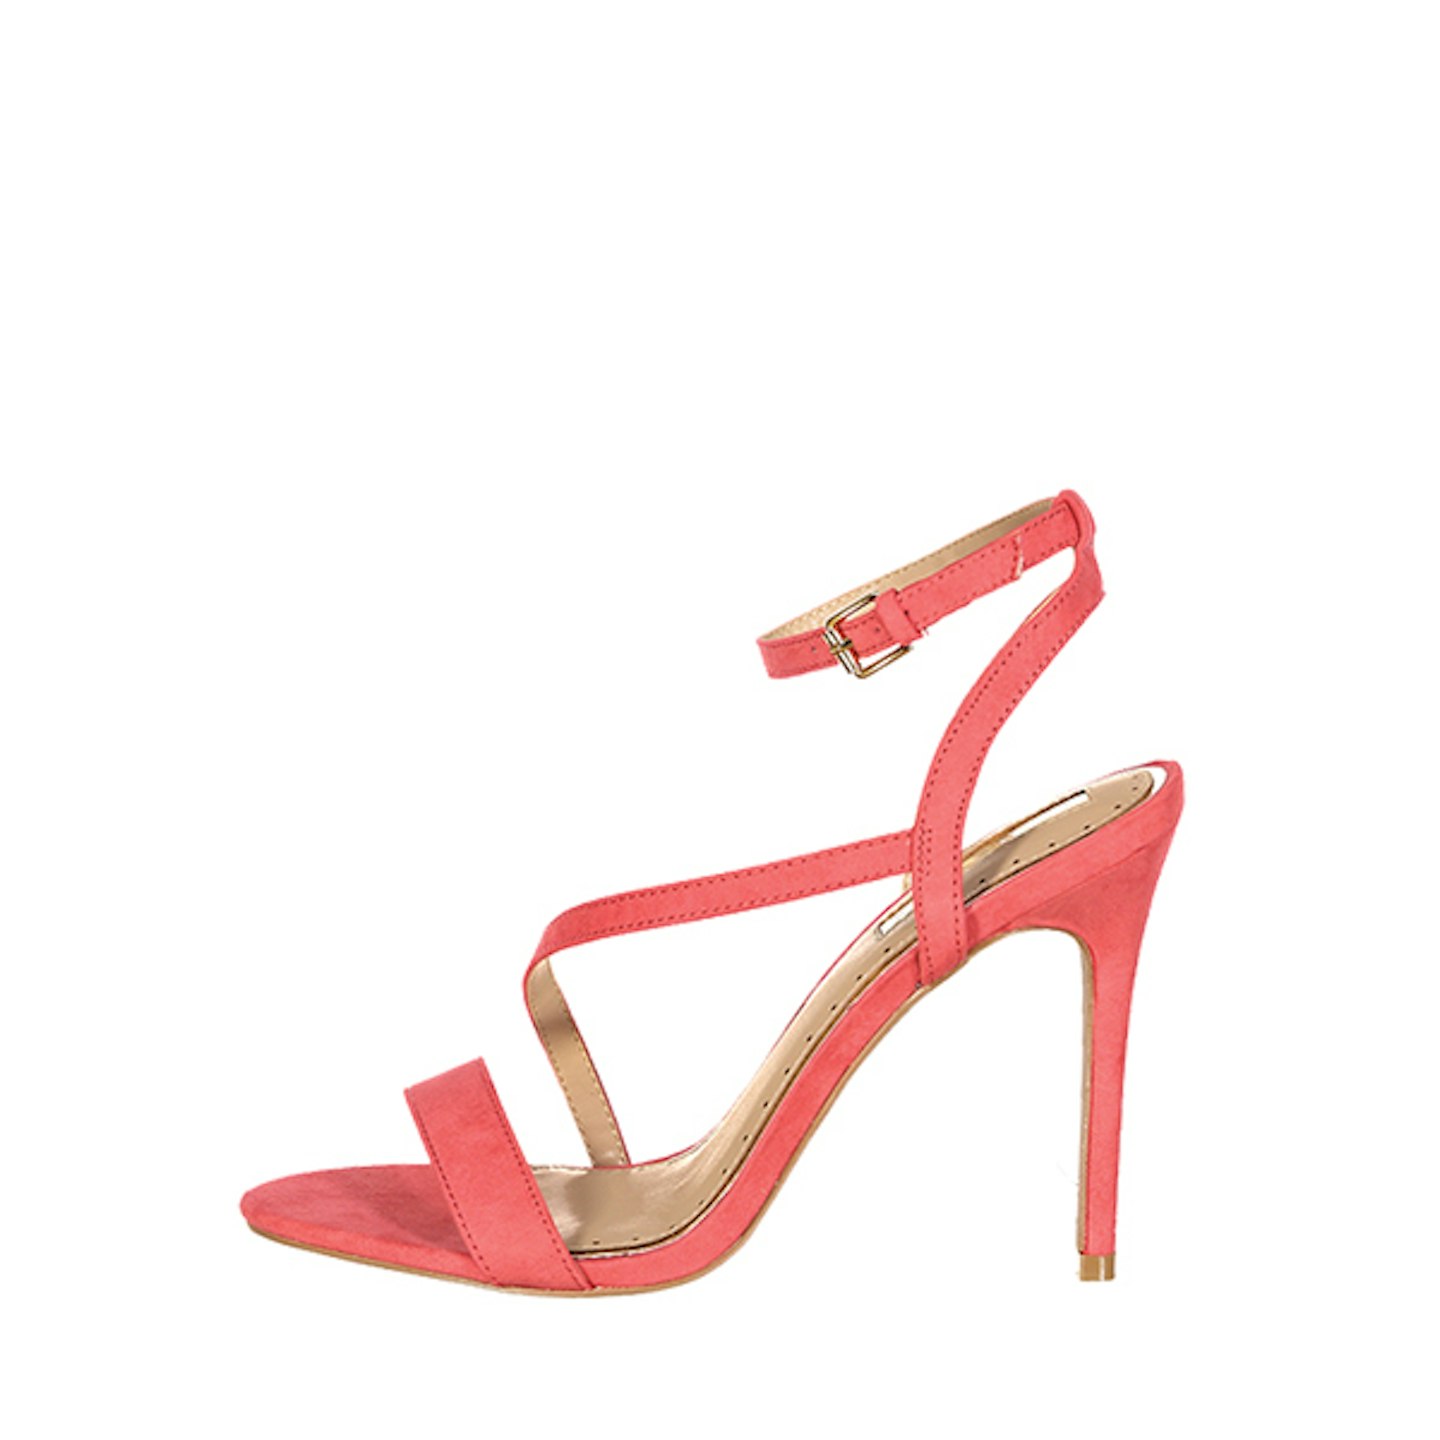 Kurt Geiger pink strappy heels